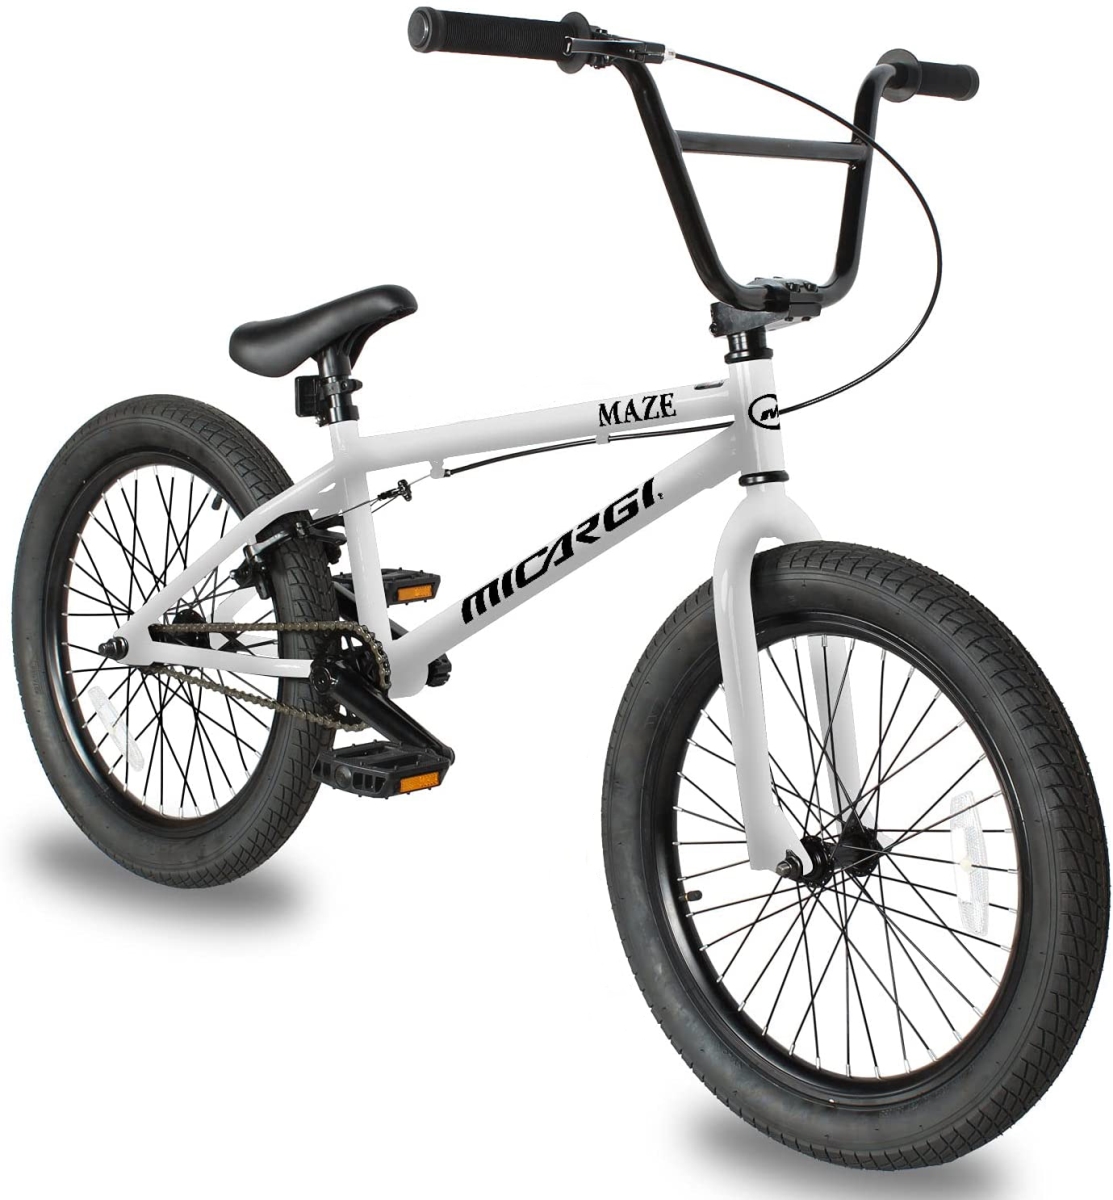 MAZE-WHI 20 in. Maze BMX Bicycle, White -  Micargi